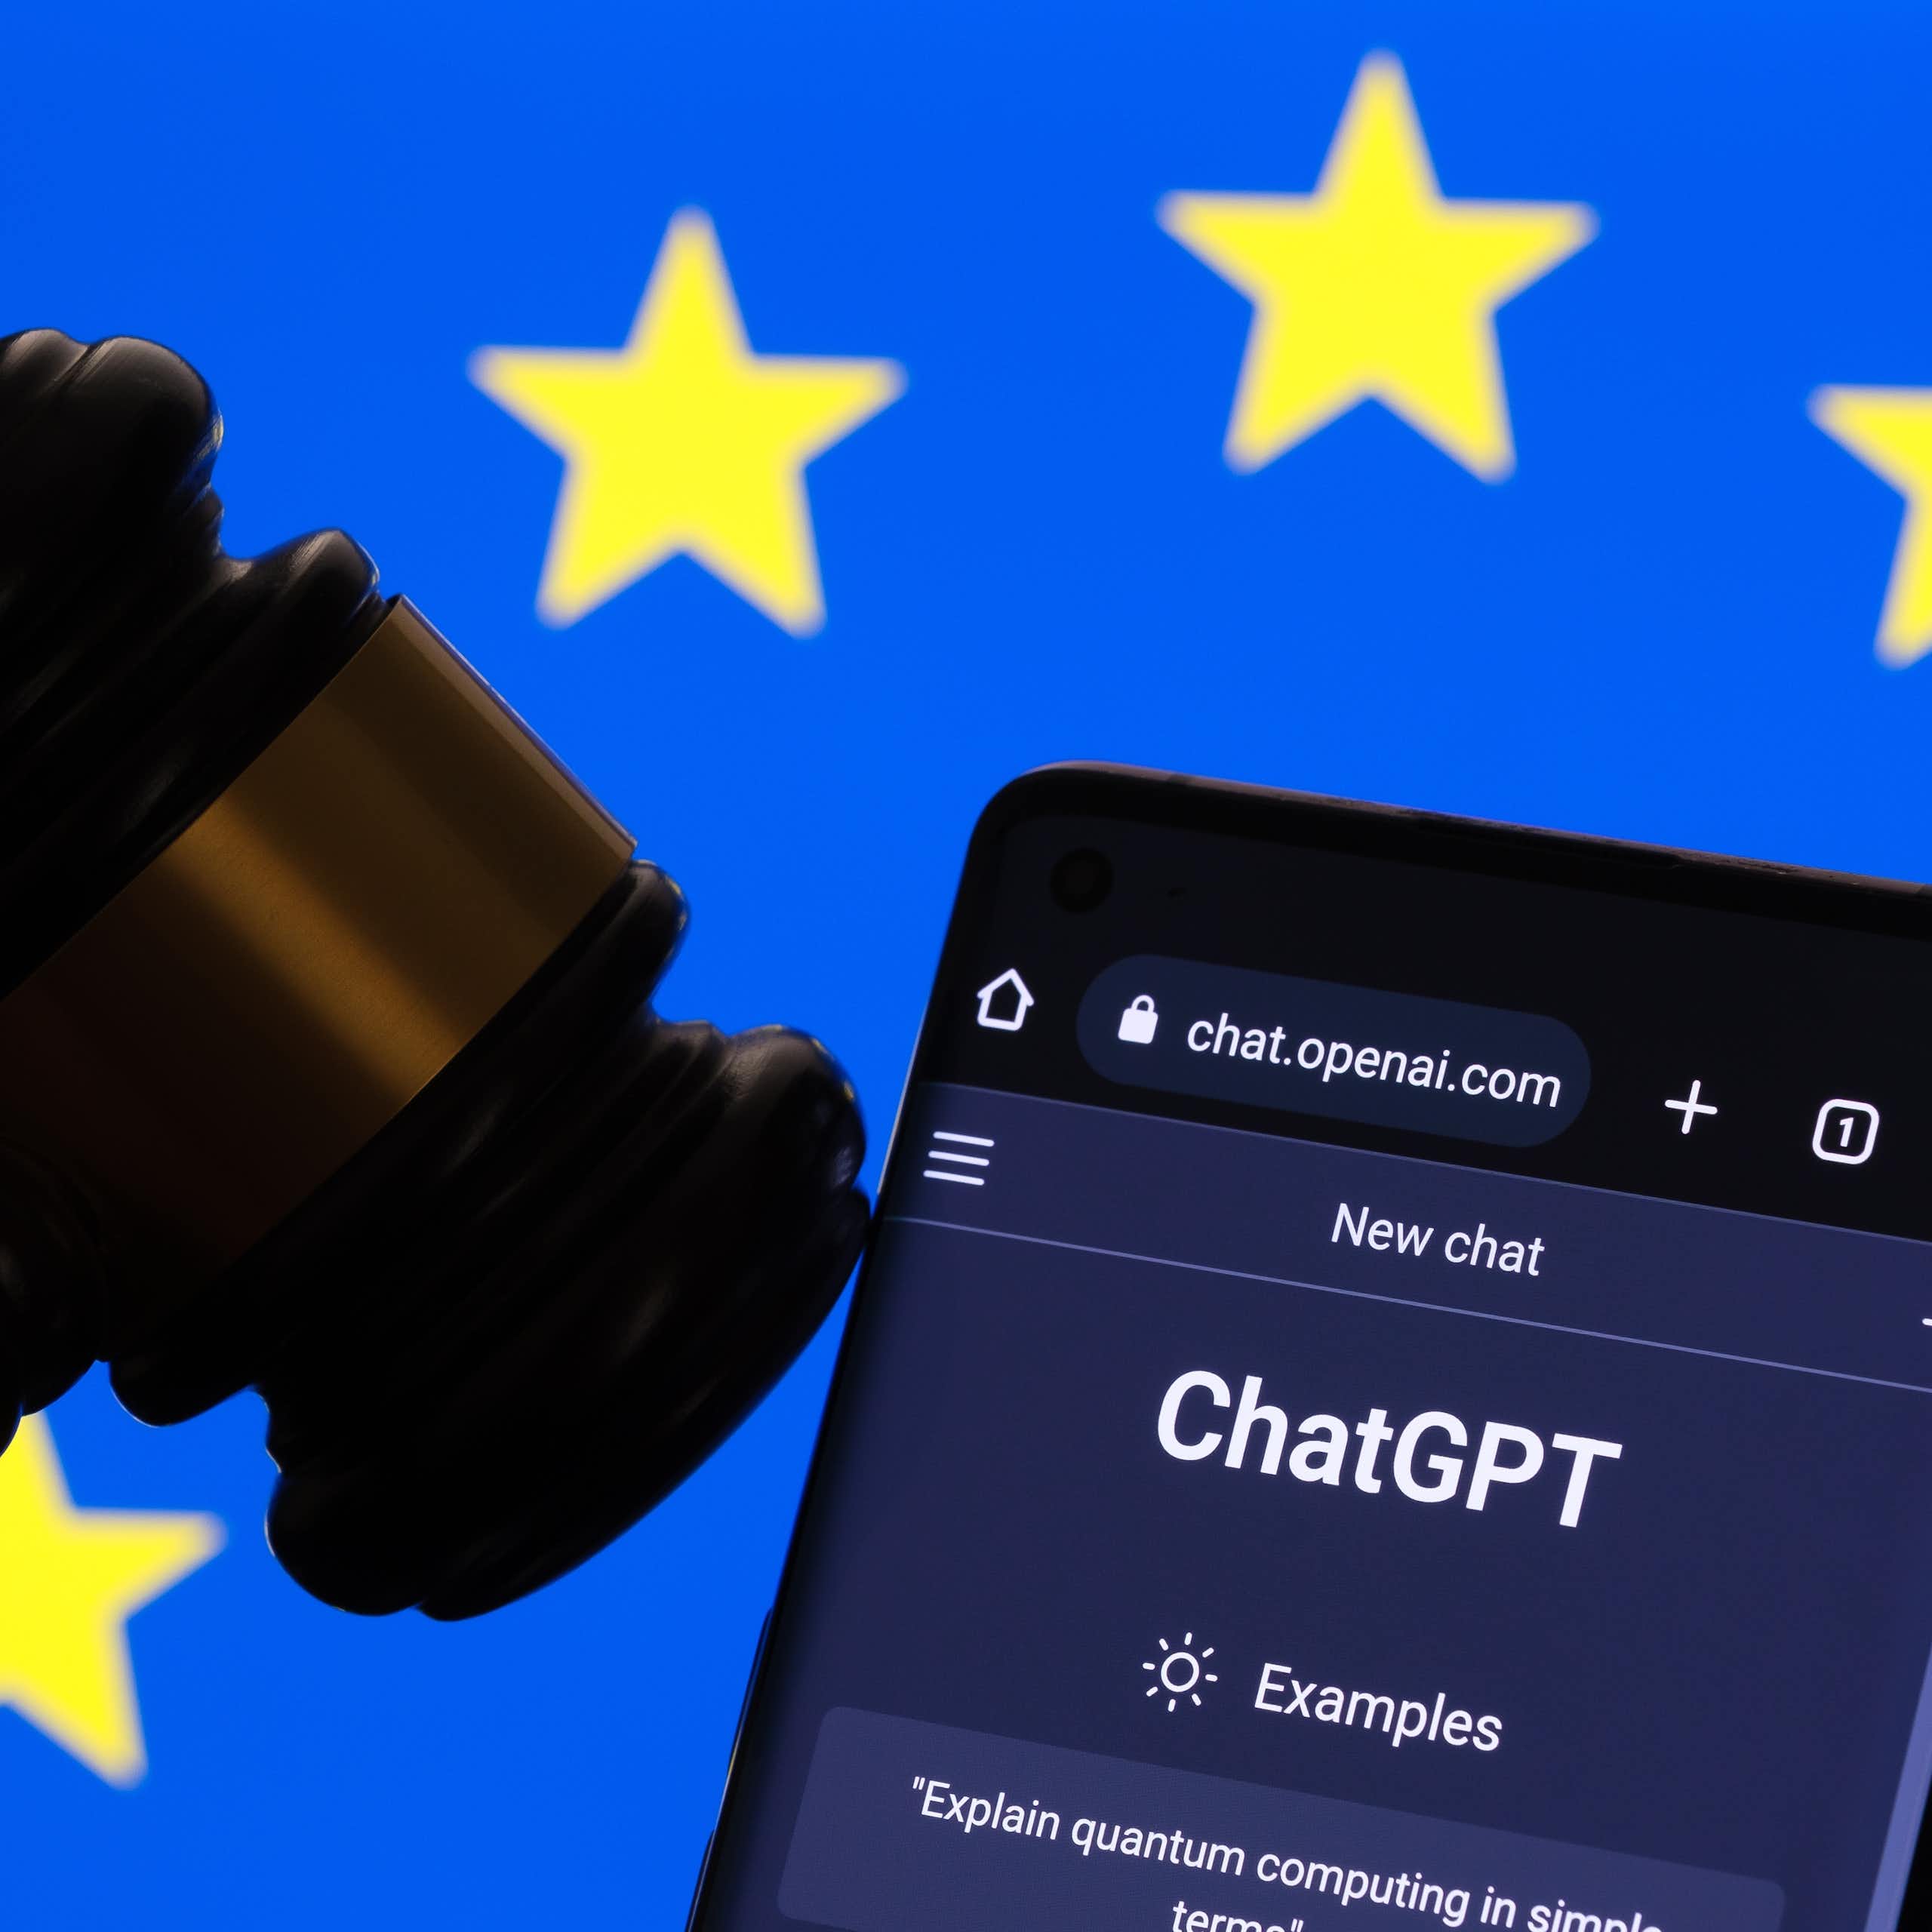 Le site internet de ChatGPT ouvert sur un téléphone, à côté d'un maillet de juge, devant un drapeau européen.